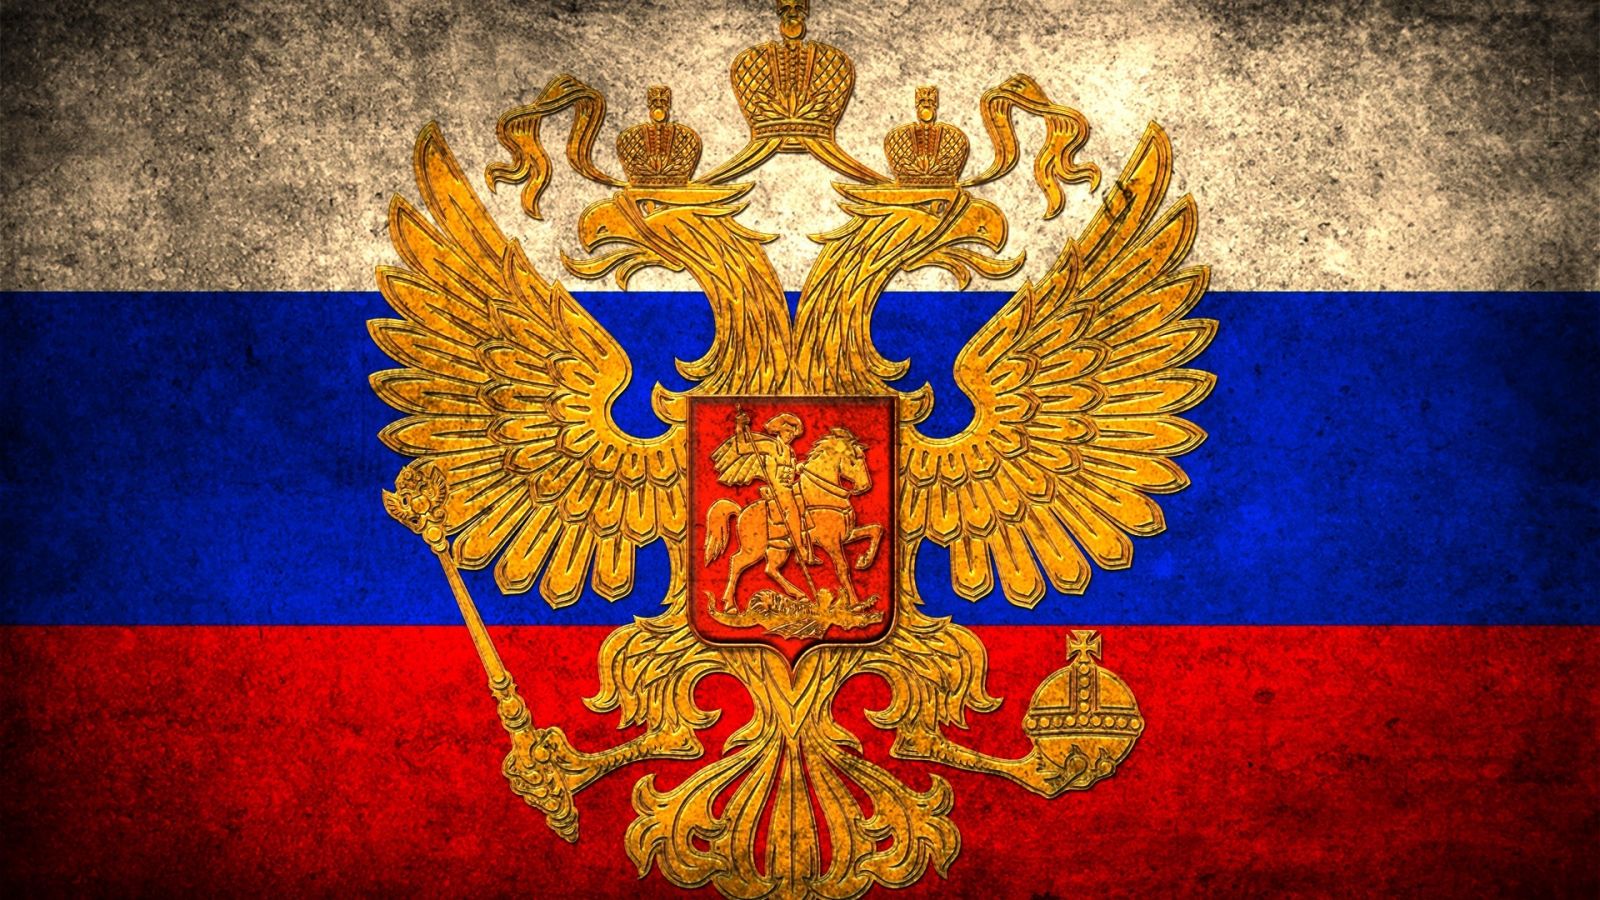 俄罗斯国旗,美到每一张都超级适合拿来当壁纸!